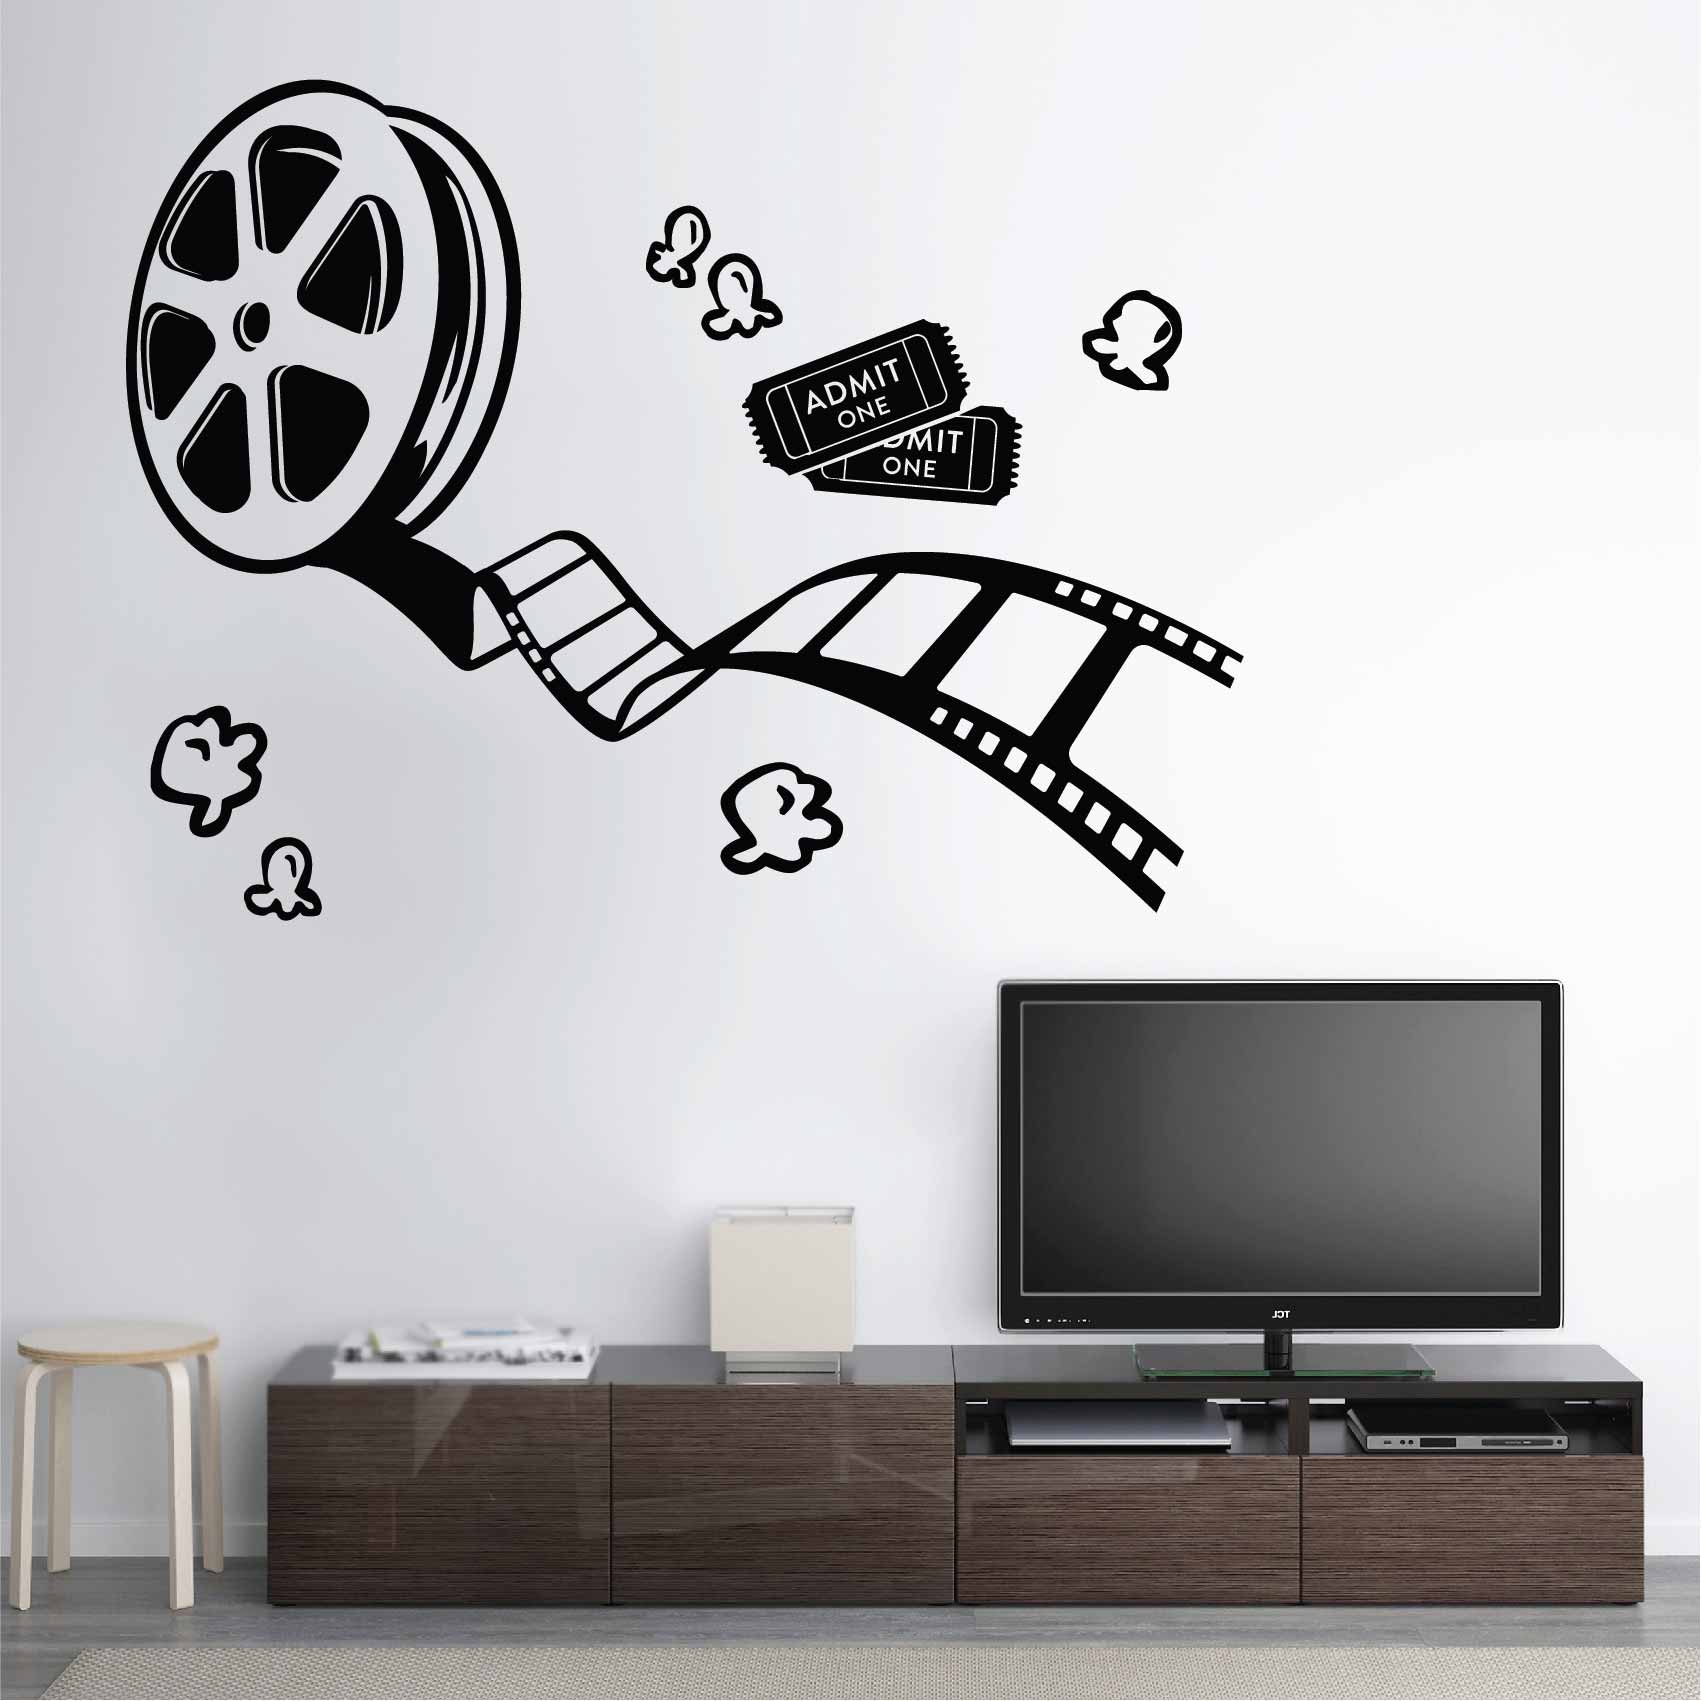 stickers-bobine-film-ref3cinema-stickers-muraux-cinema-autocollant-deco-salon-chambre-sticker-mural-deco